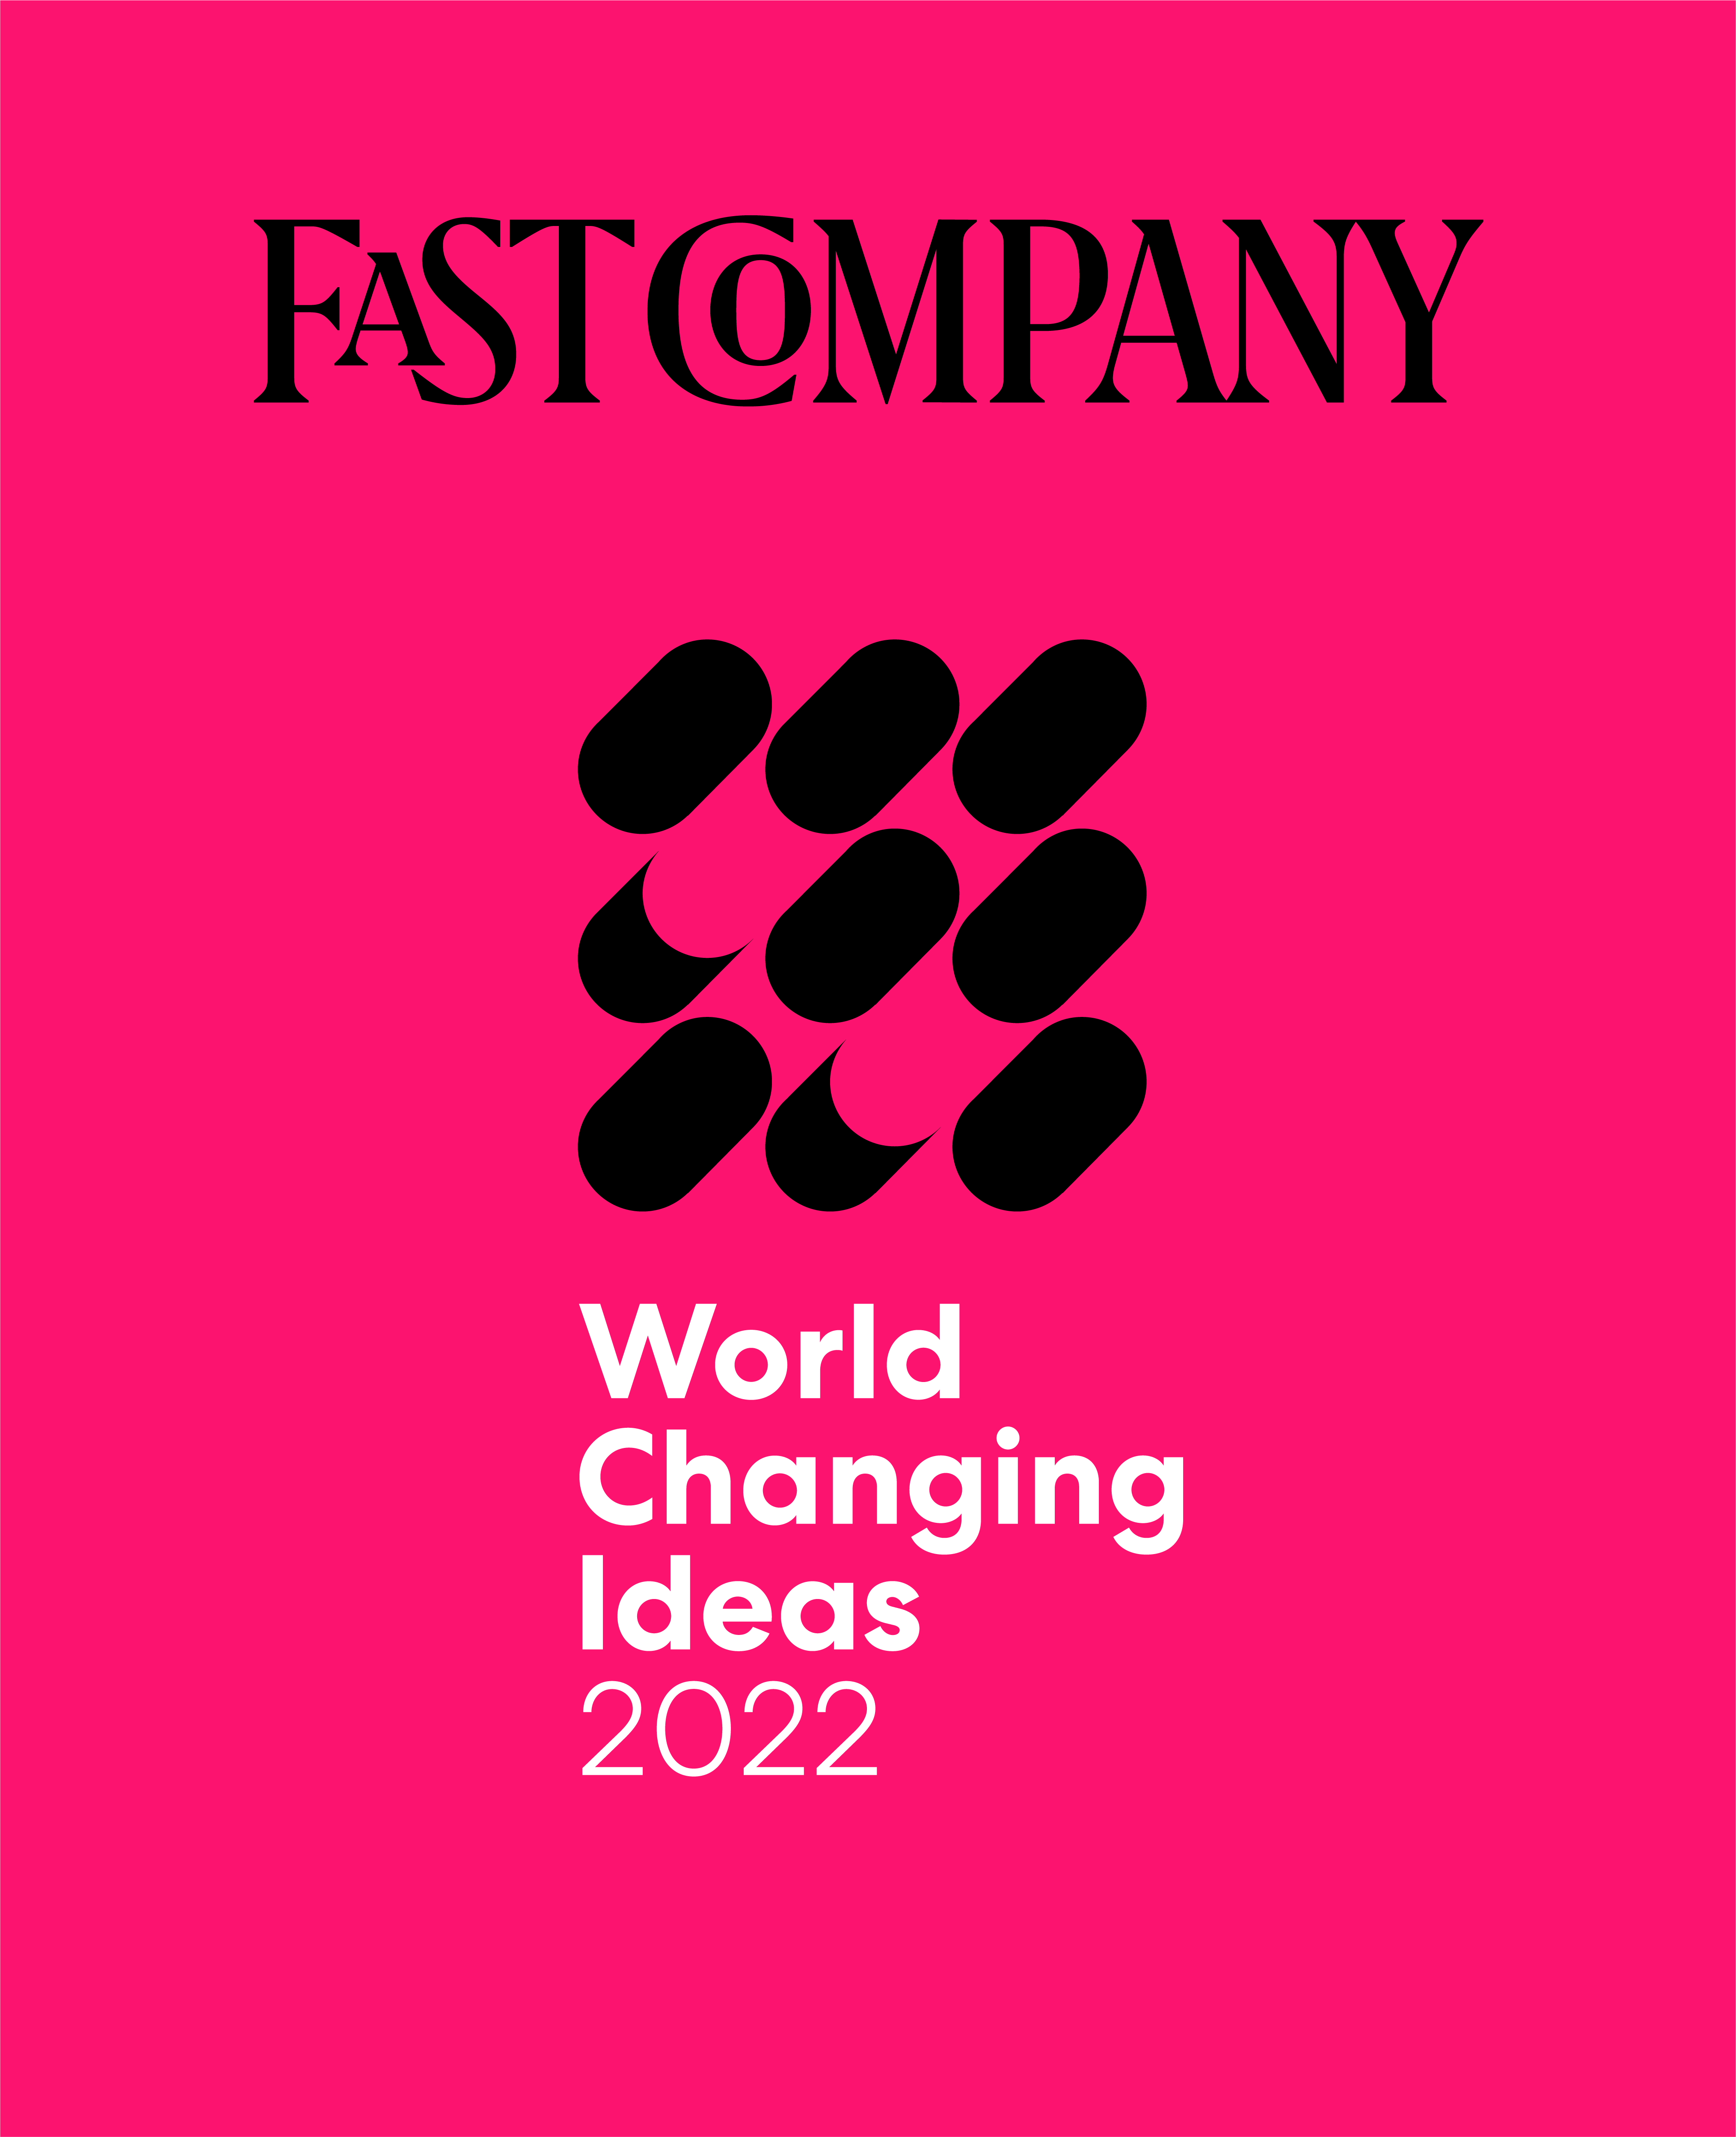 Finalista de Fast Company: Ideas que cambian al mundo en 2022